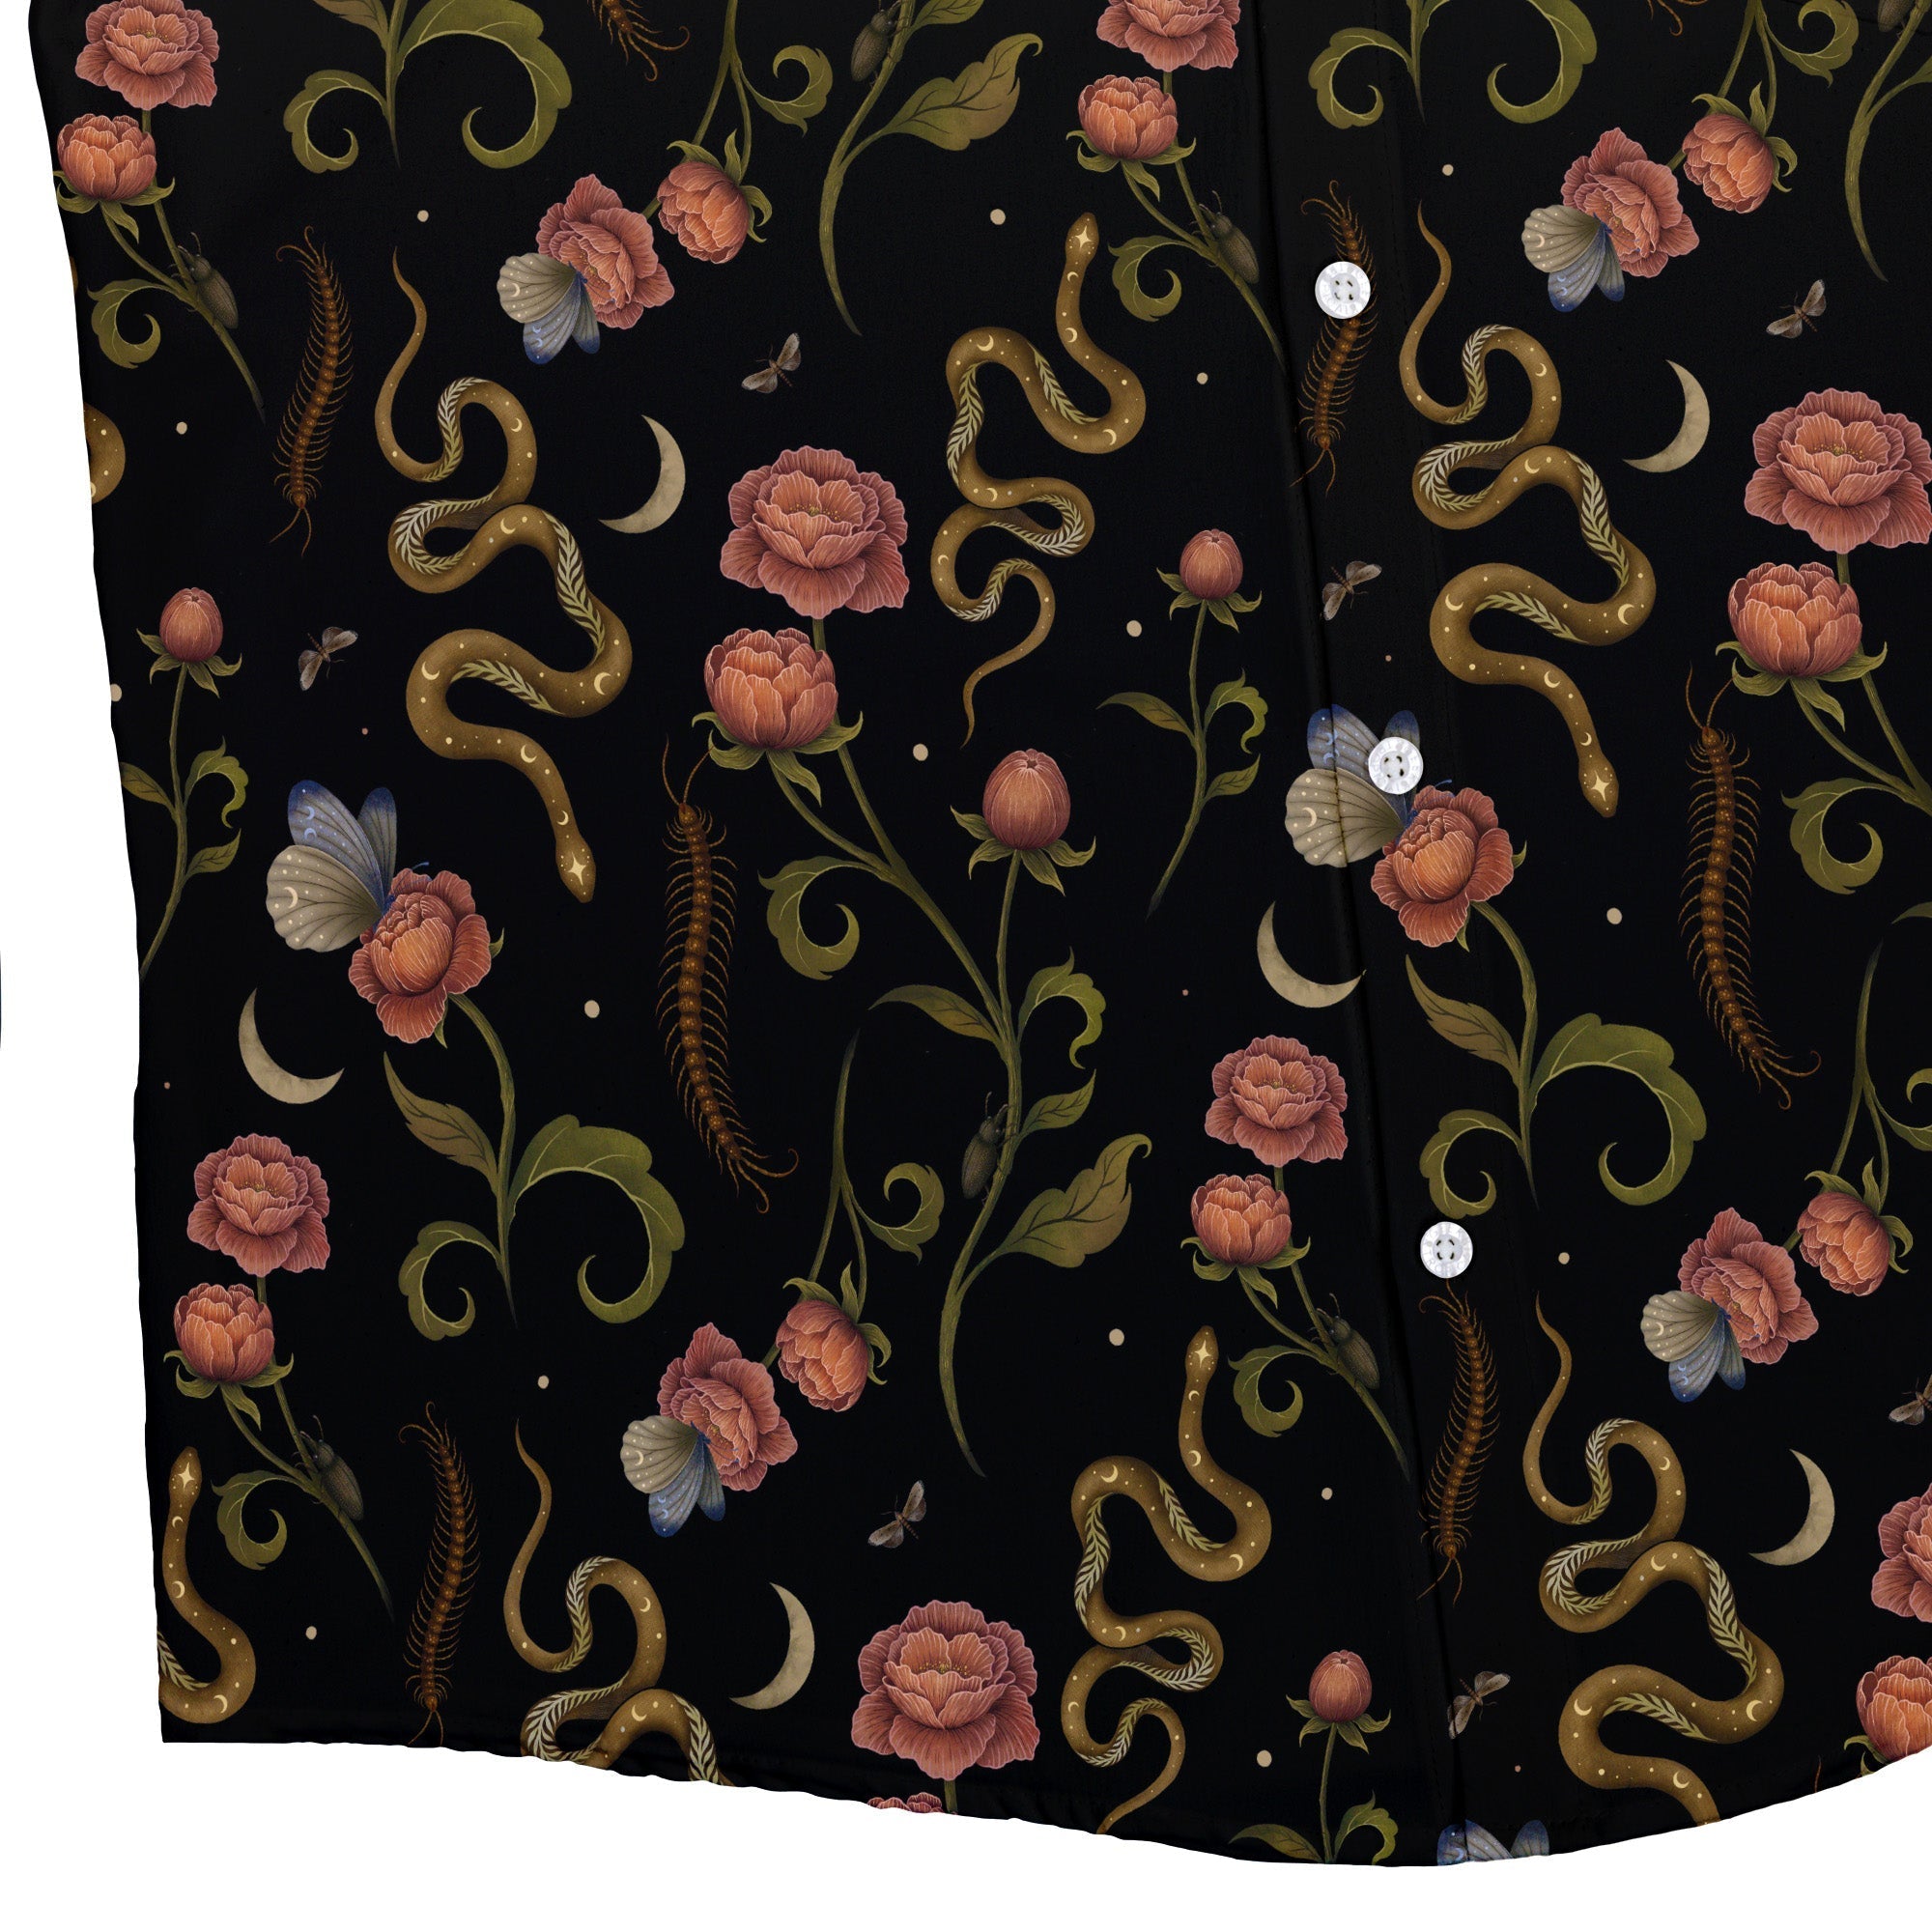 Episodic Serpent Garden Pink Space Button Up Shirt - XS - Hawaiian Shirt - No Pocket -